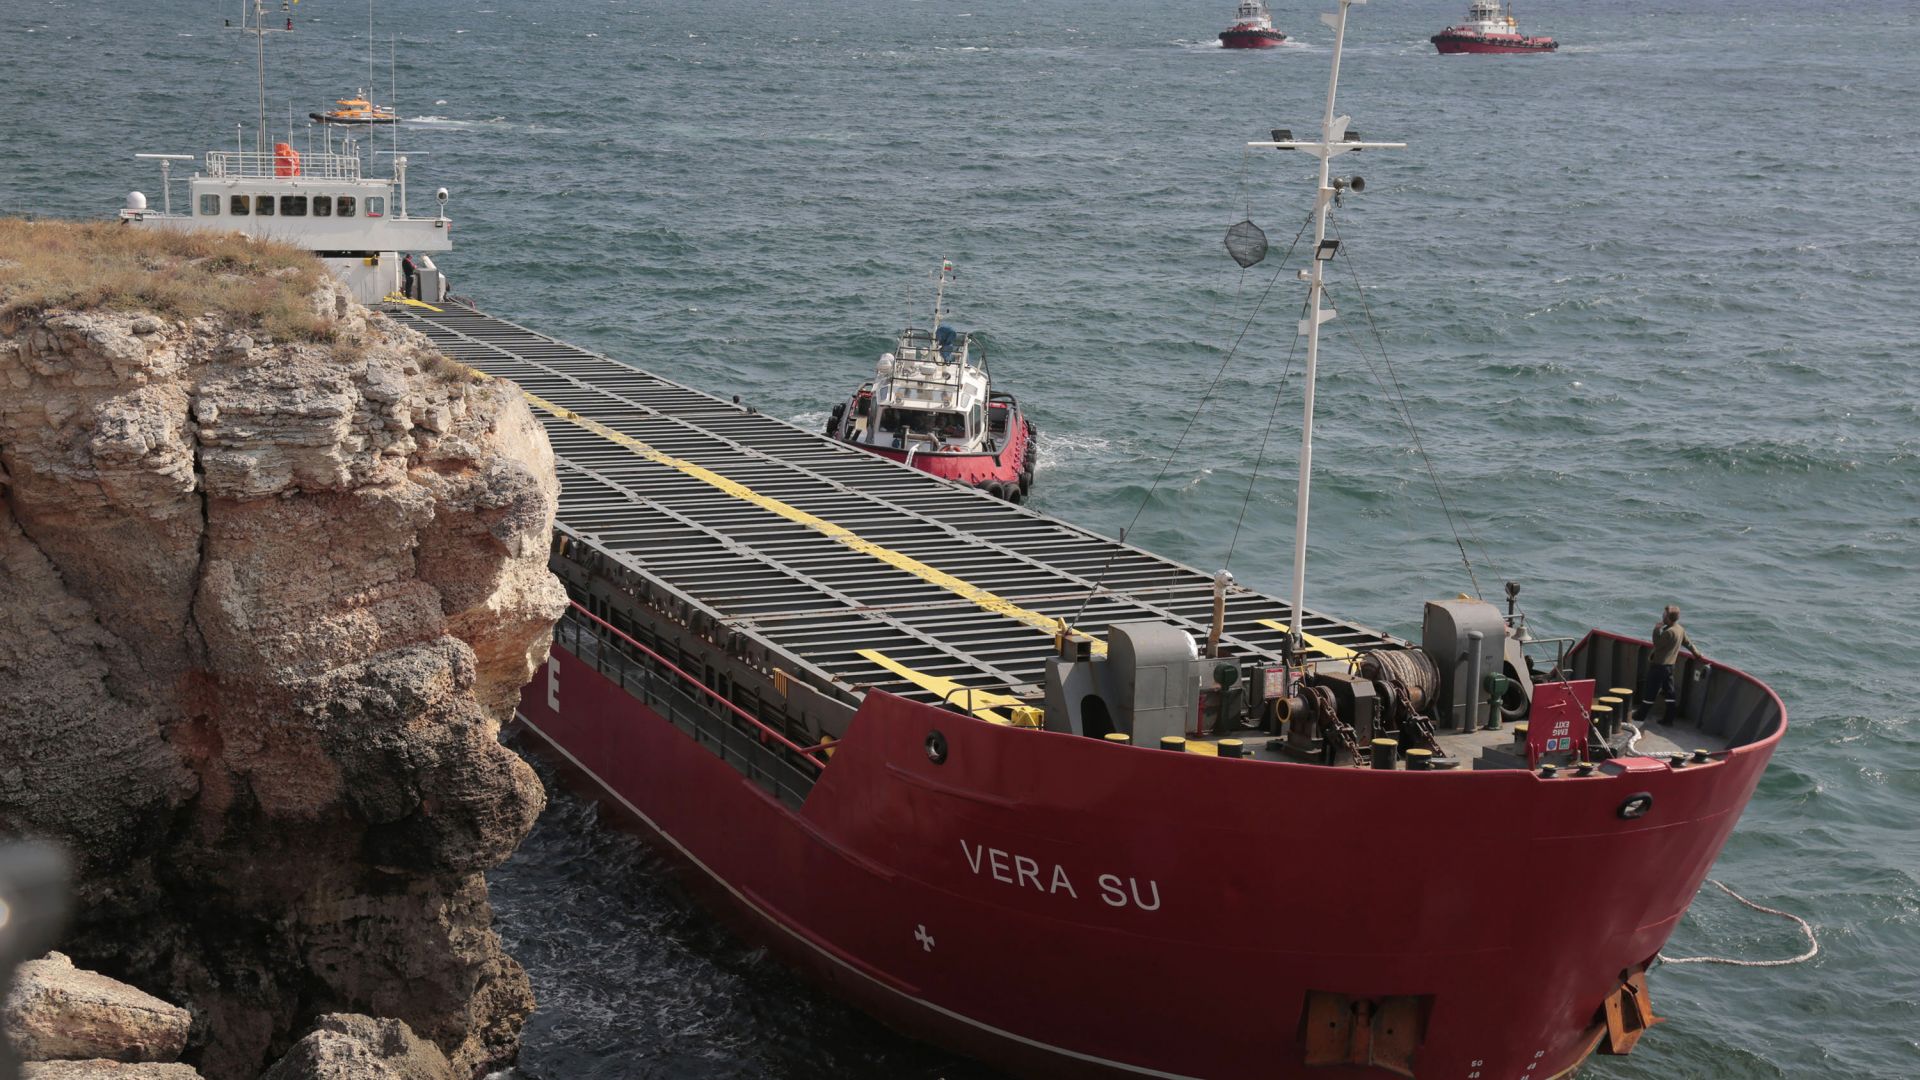 Има съмнения, че корабът "Вера Су" е наводнен нарочно